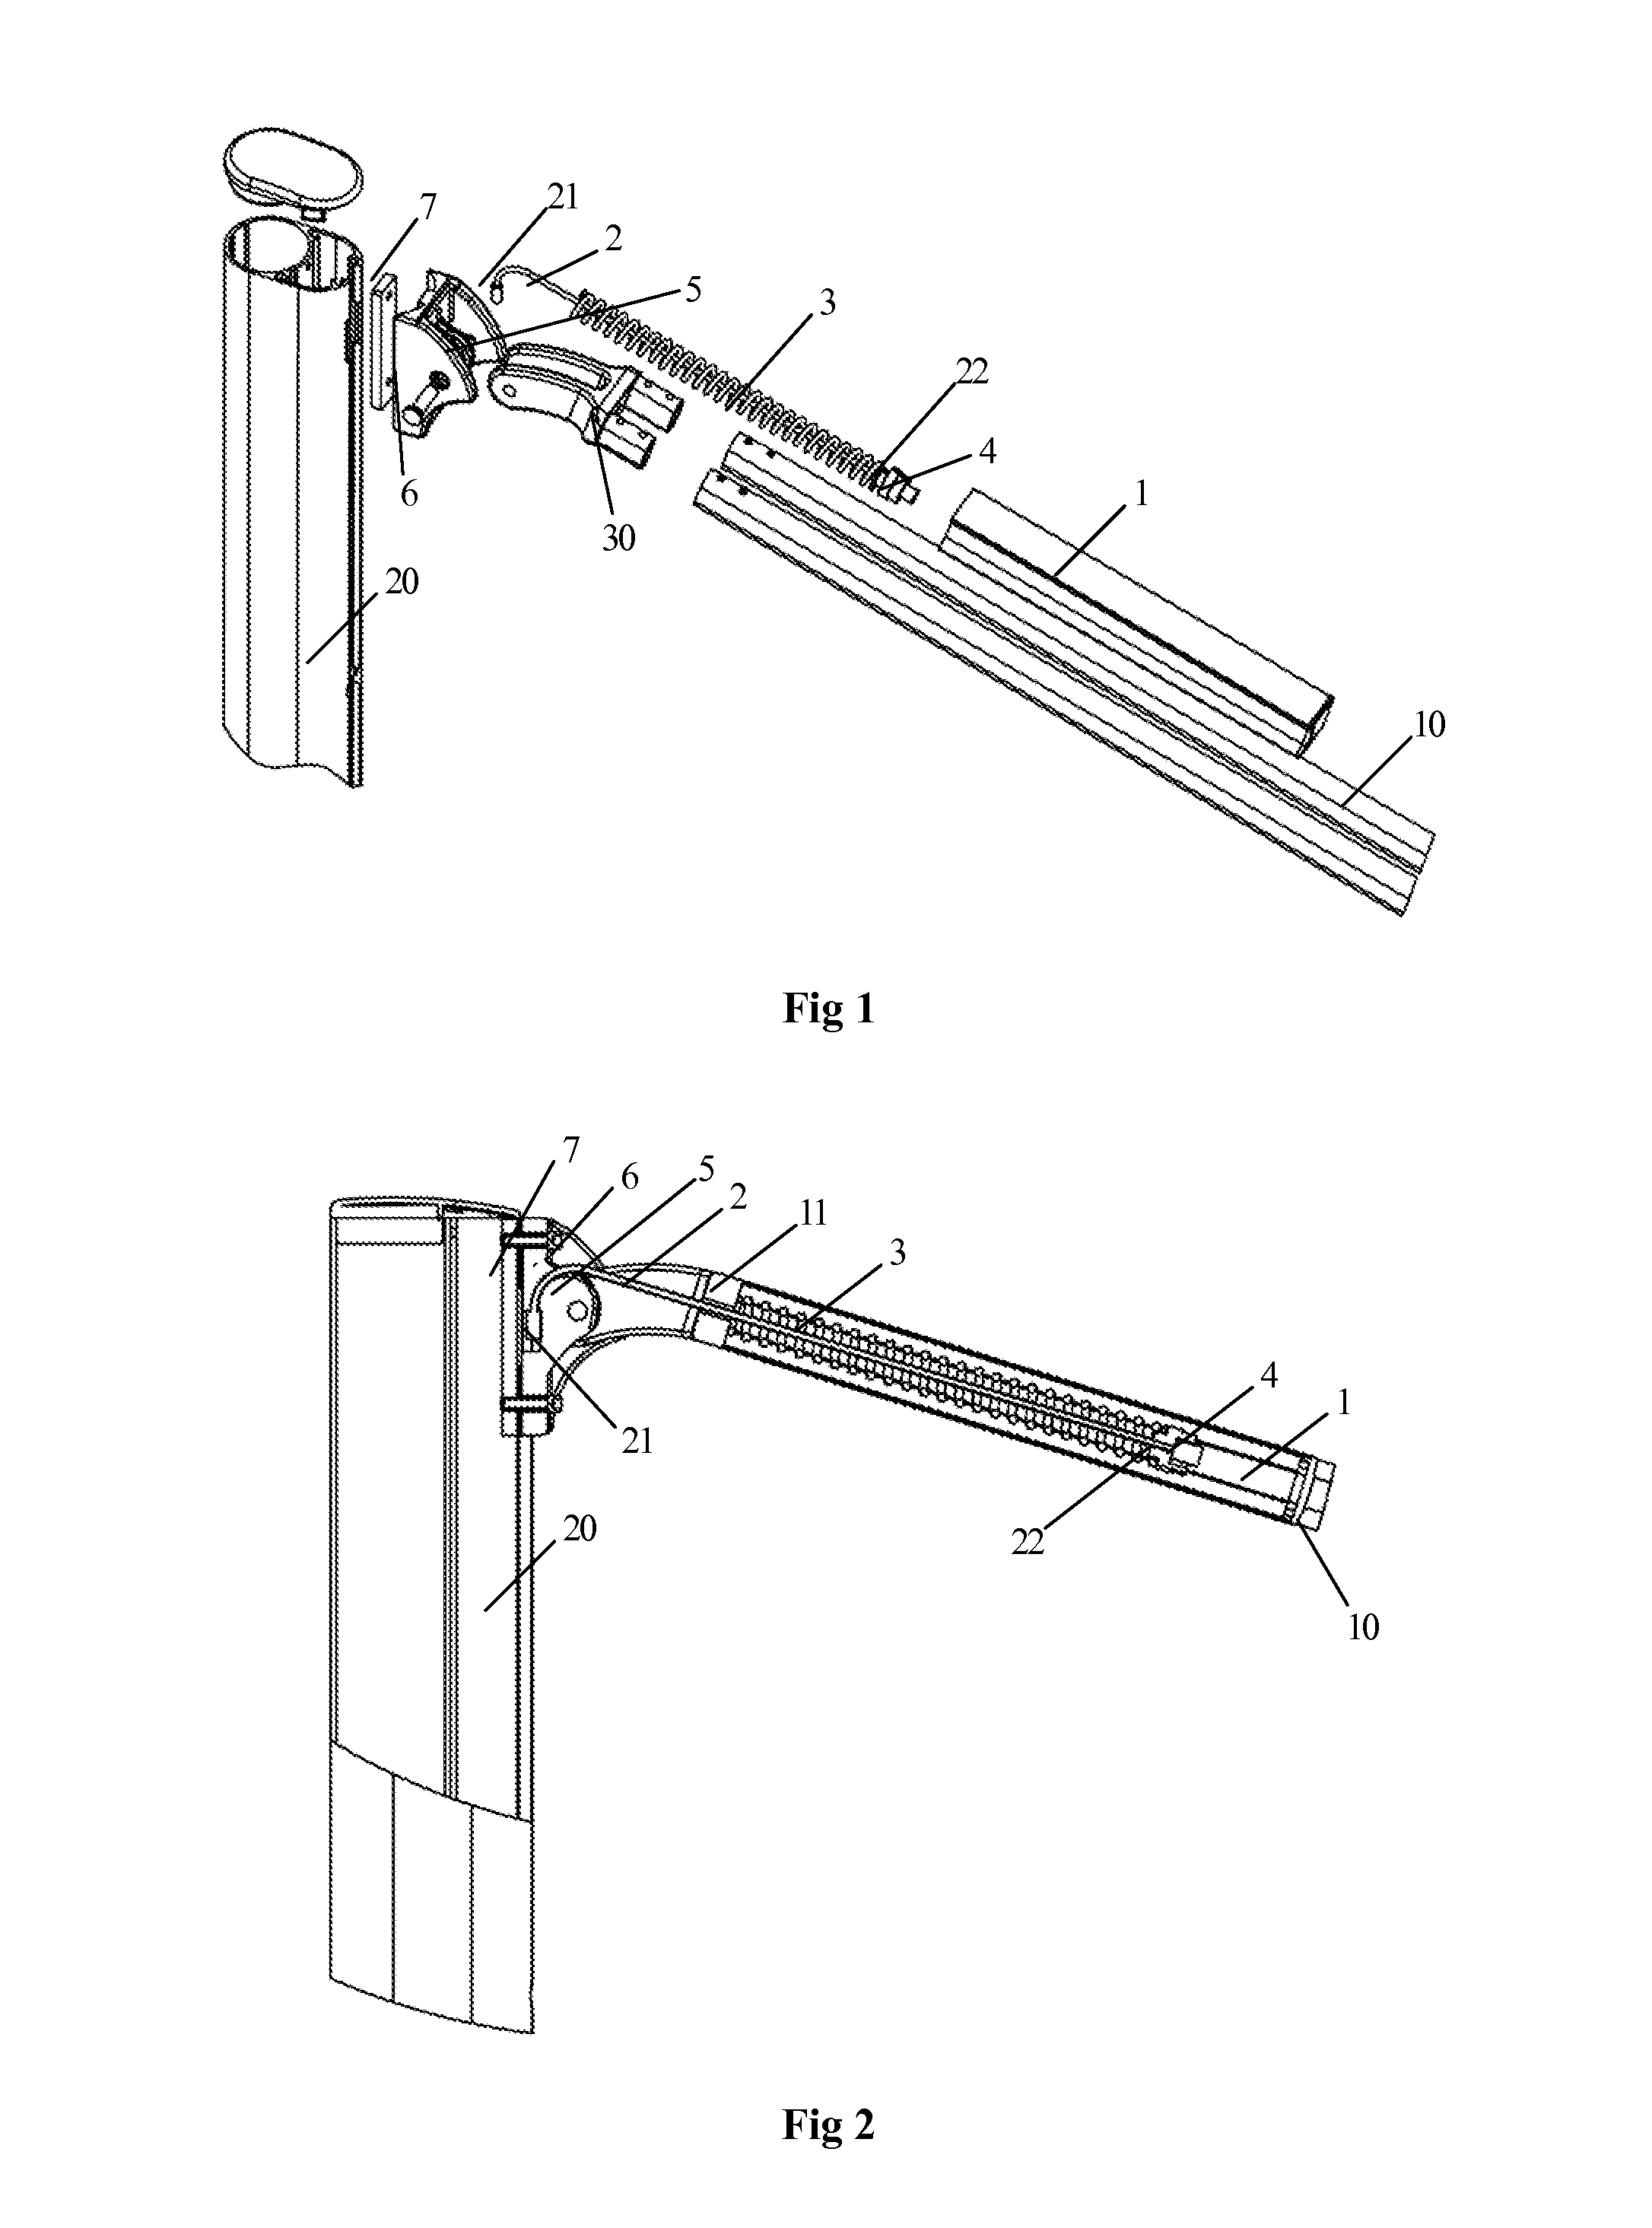 Laborsaving mechanism for unfolding sunshade